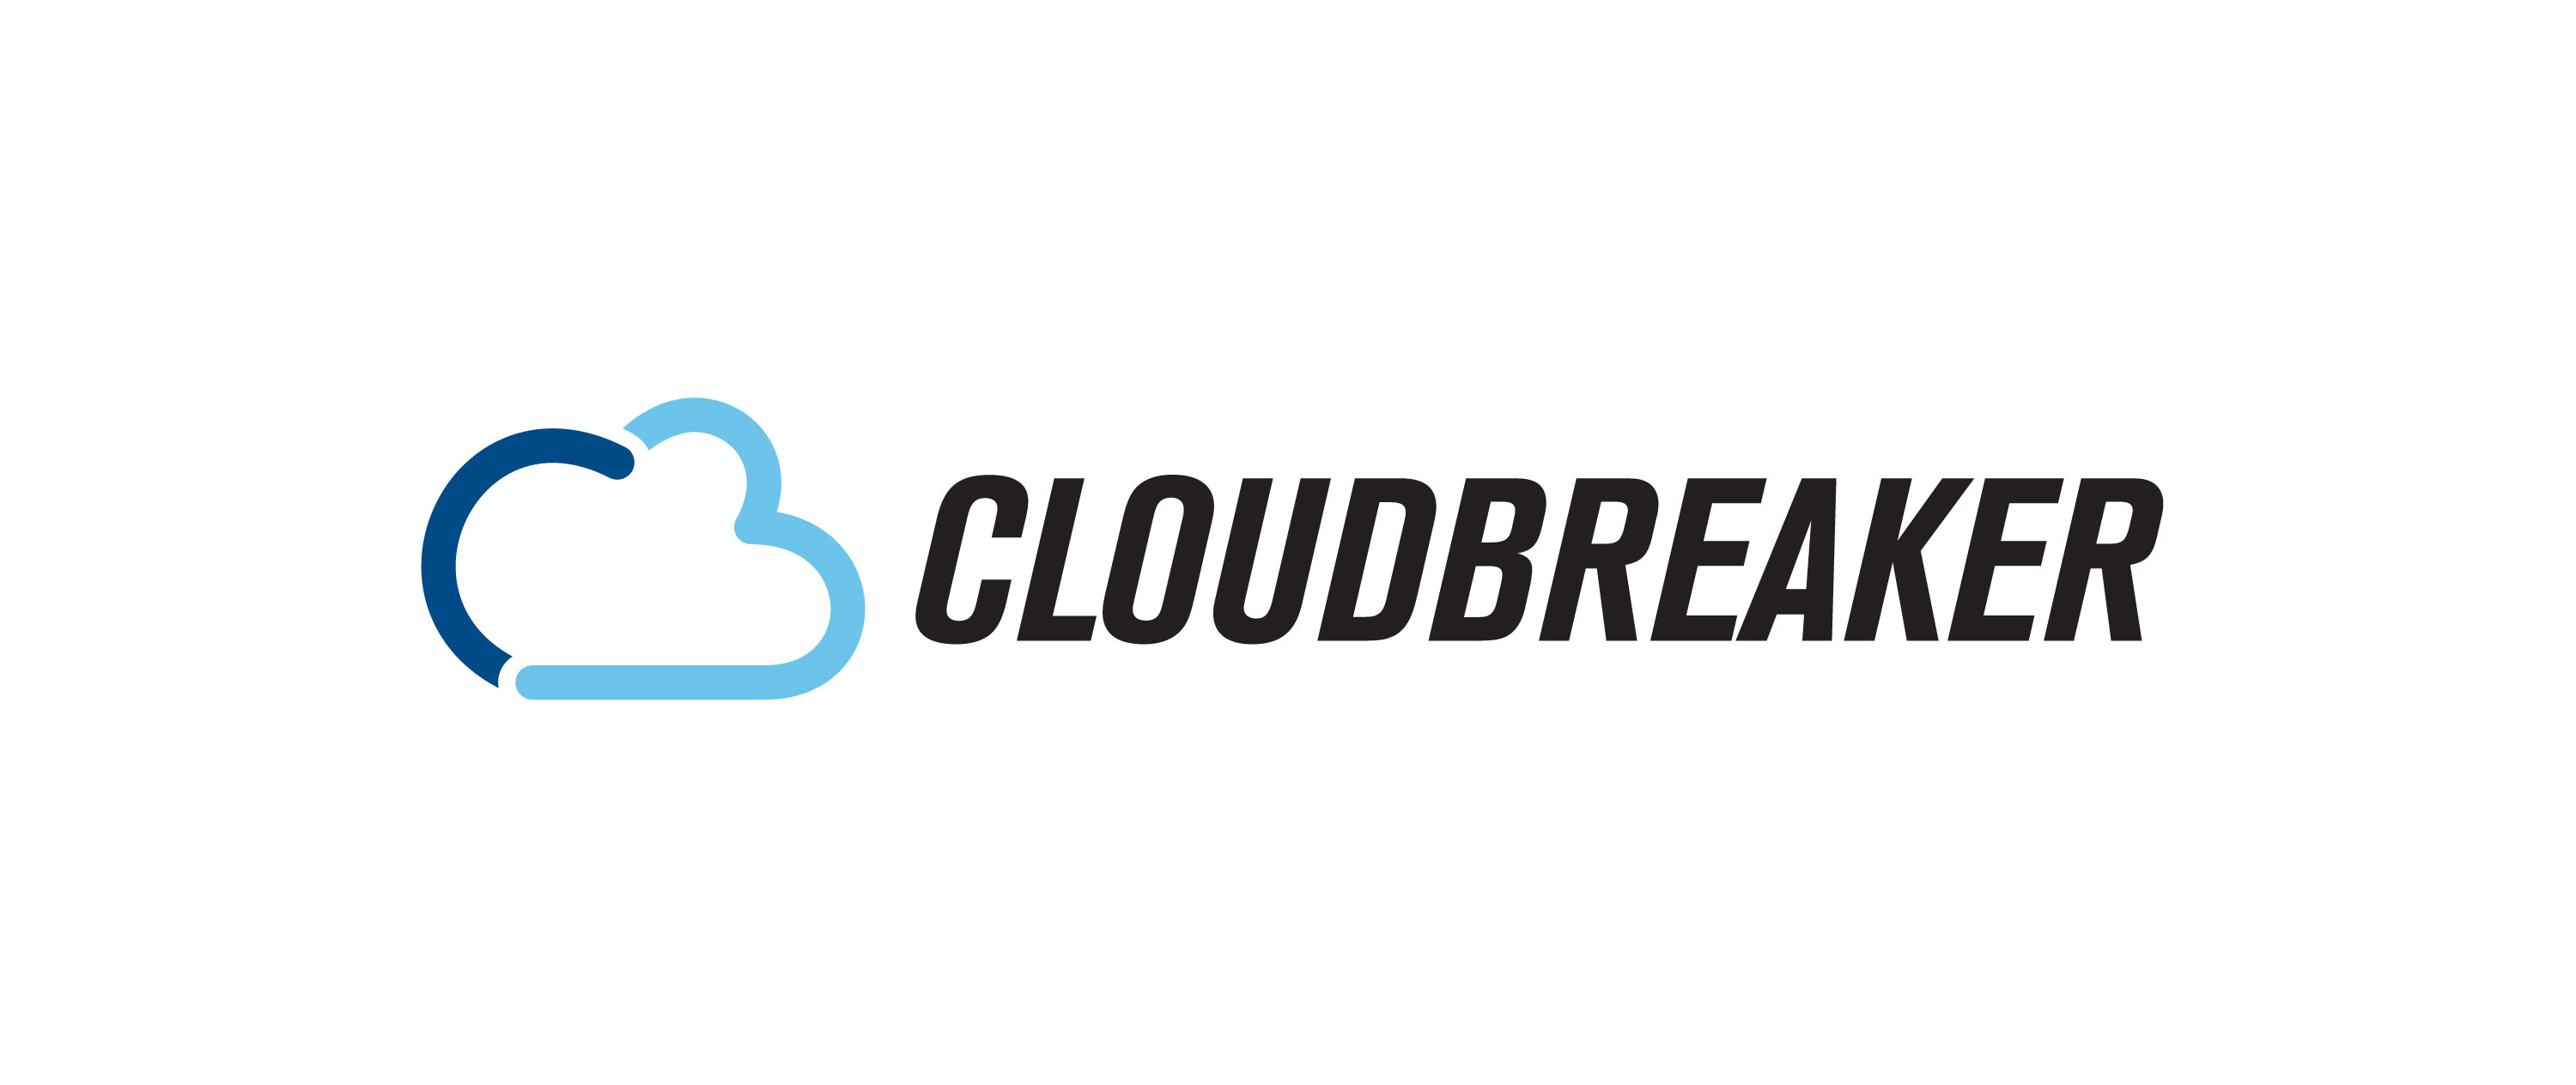 Cloud breaker AV